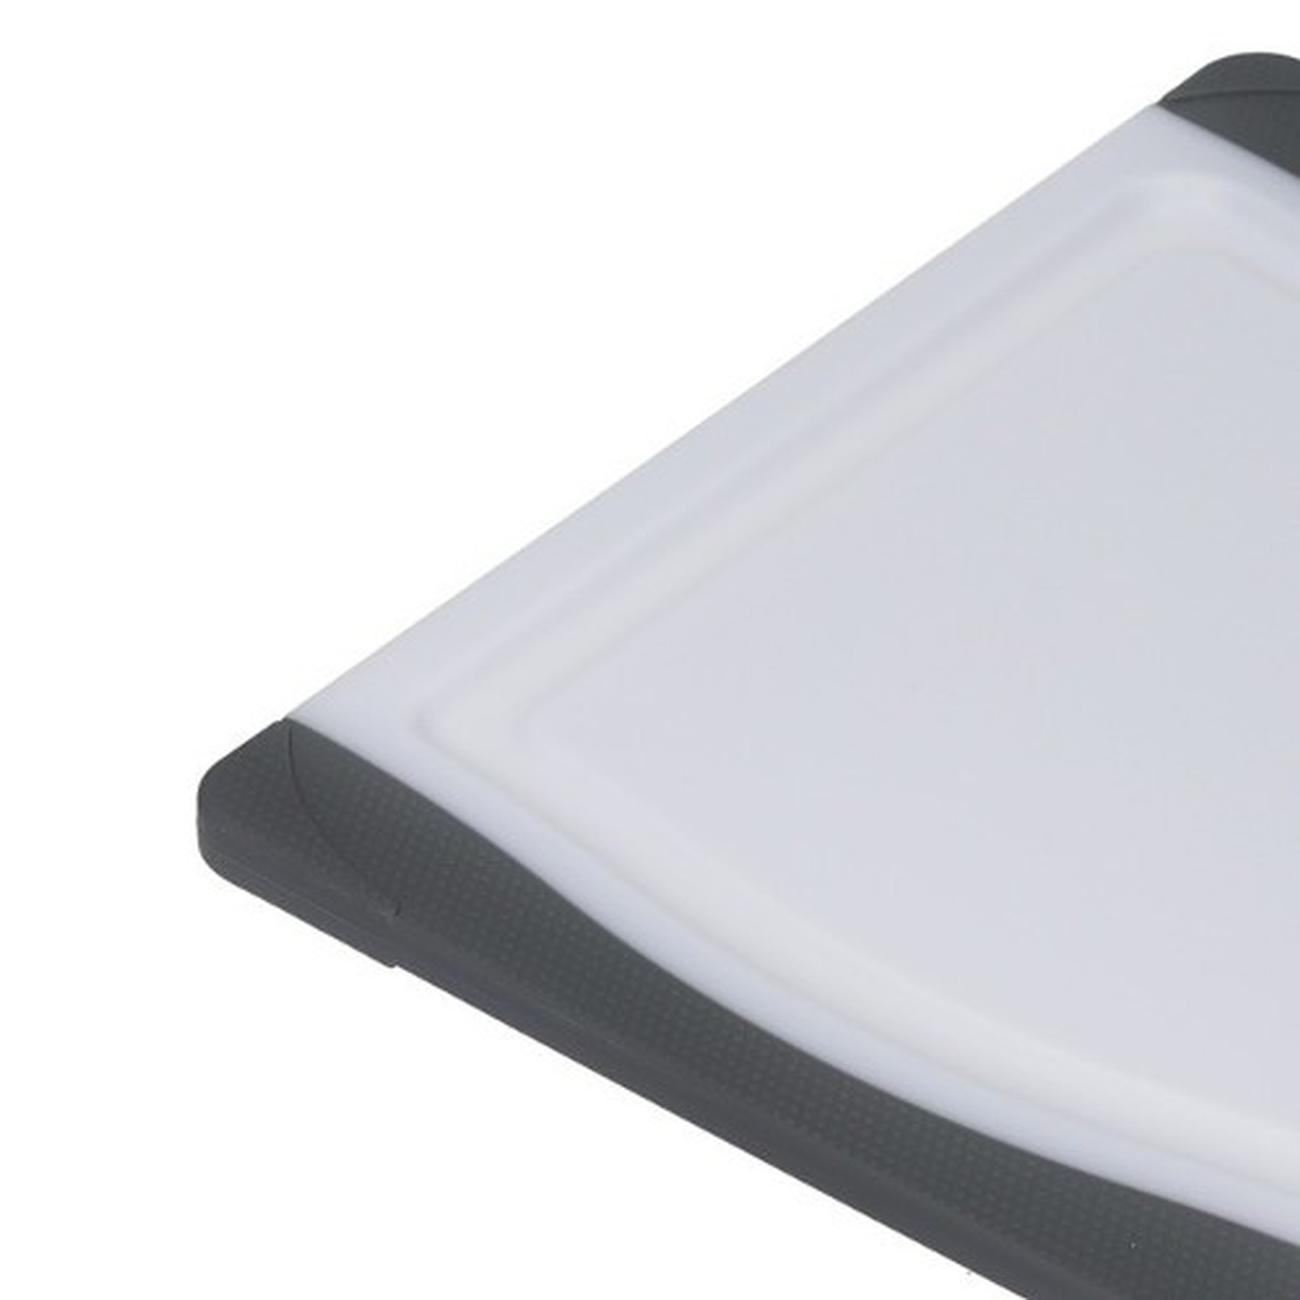 mc-chopping-board-small-anti-microbial - MasterClass Anti-Microbial Non-Slip Chopping Board